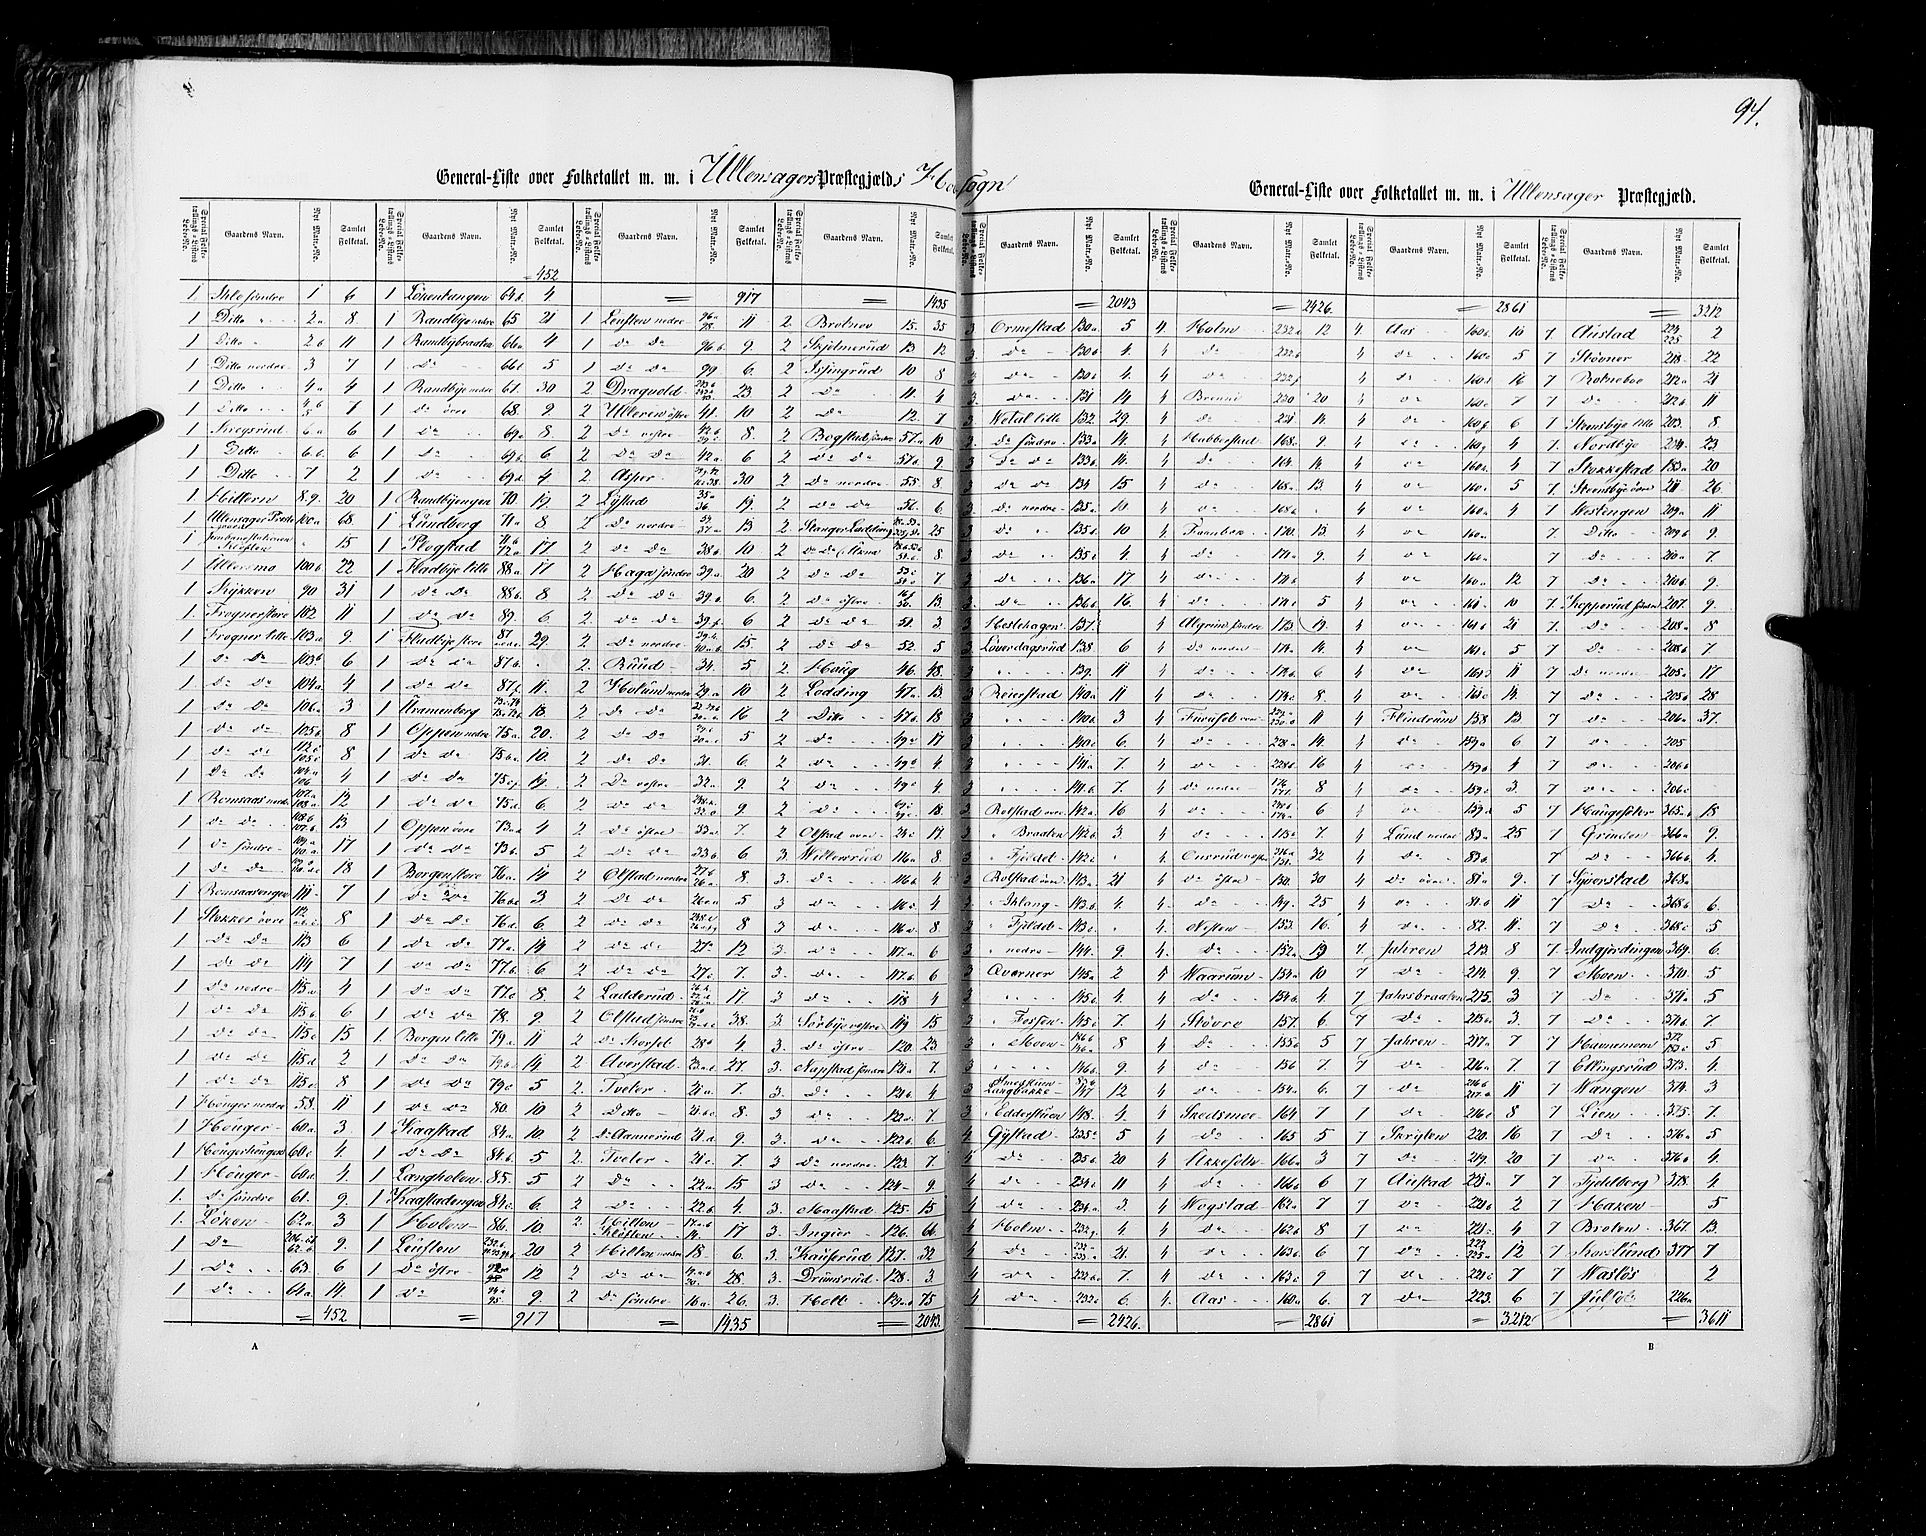 RA, Census 1855, vol. 1: Akershus amt, Smålenenes amt og Hedemarken amt, 1855, p. 94